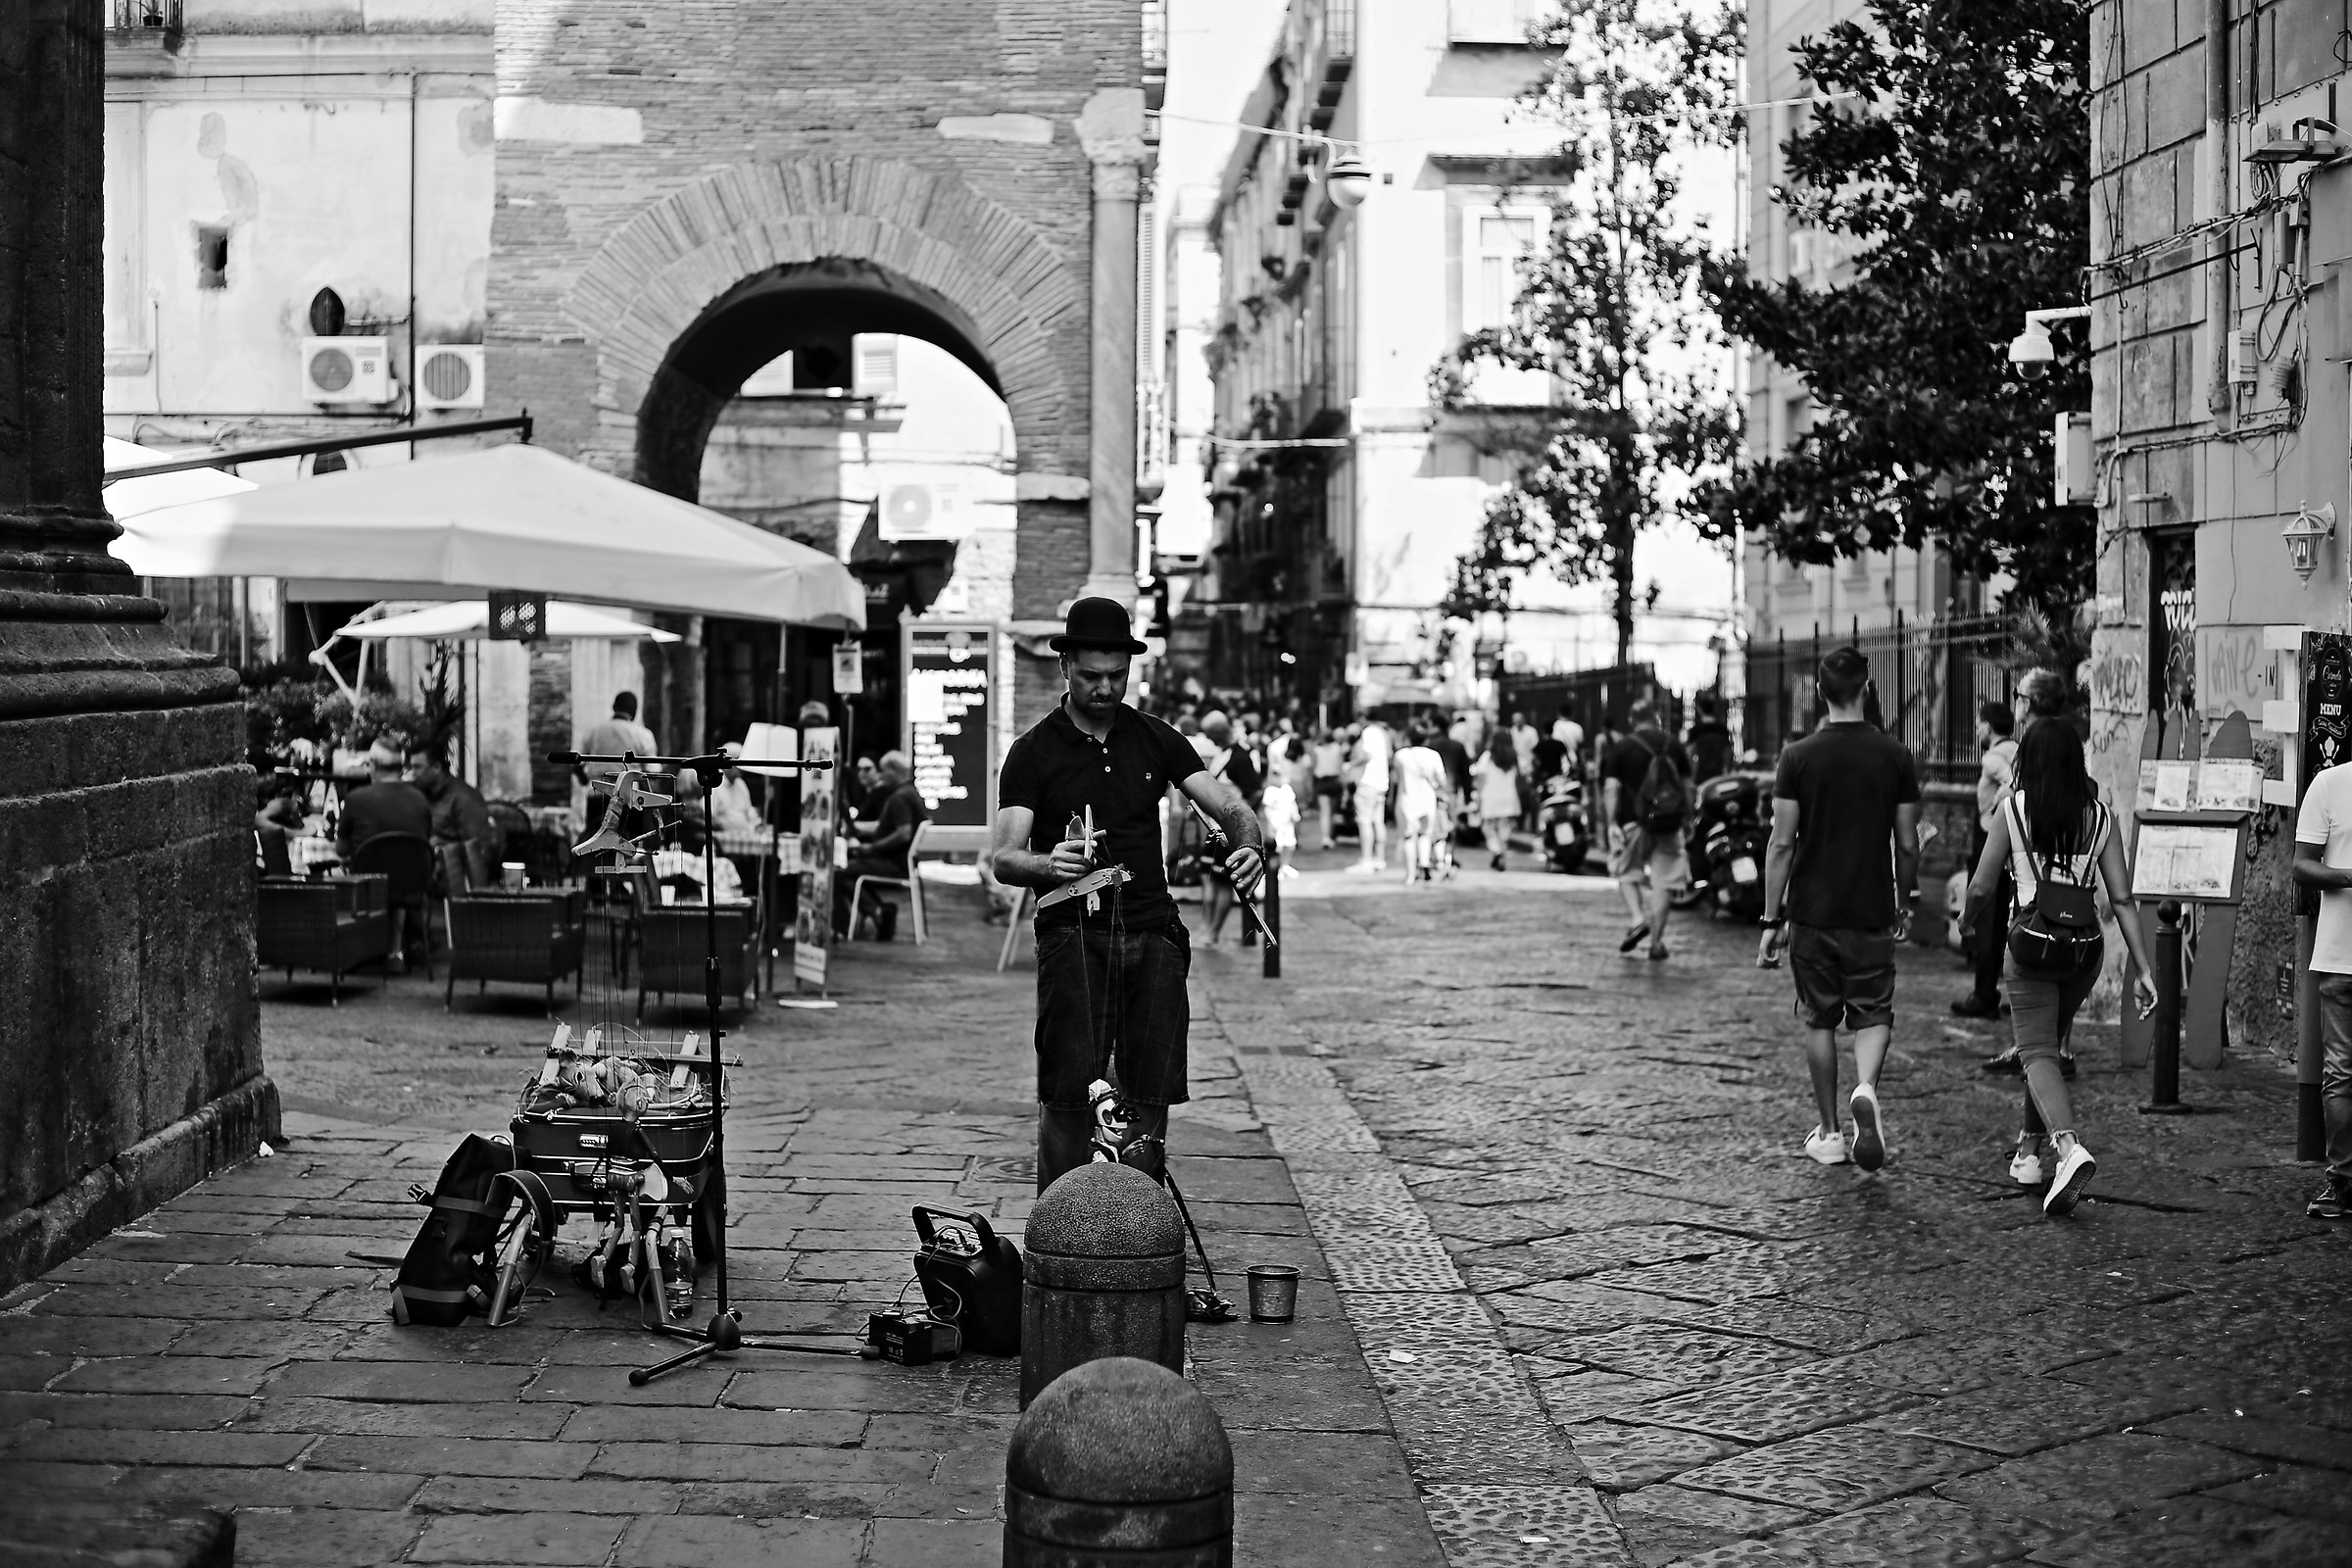 Street in Bn Napoli...